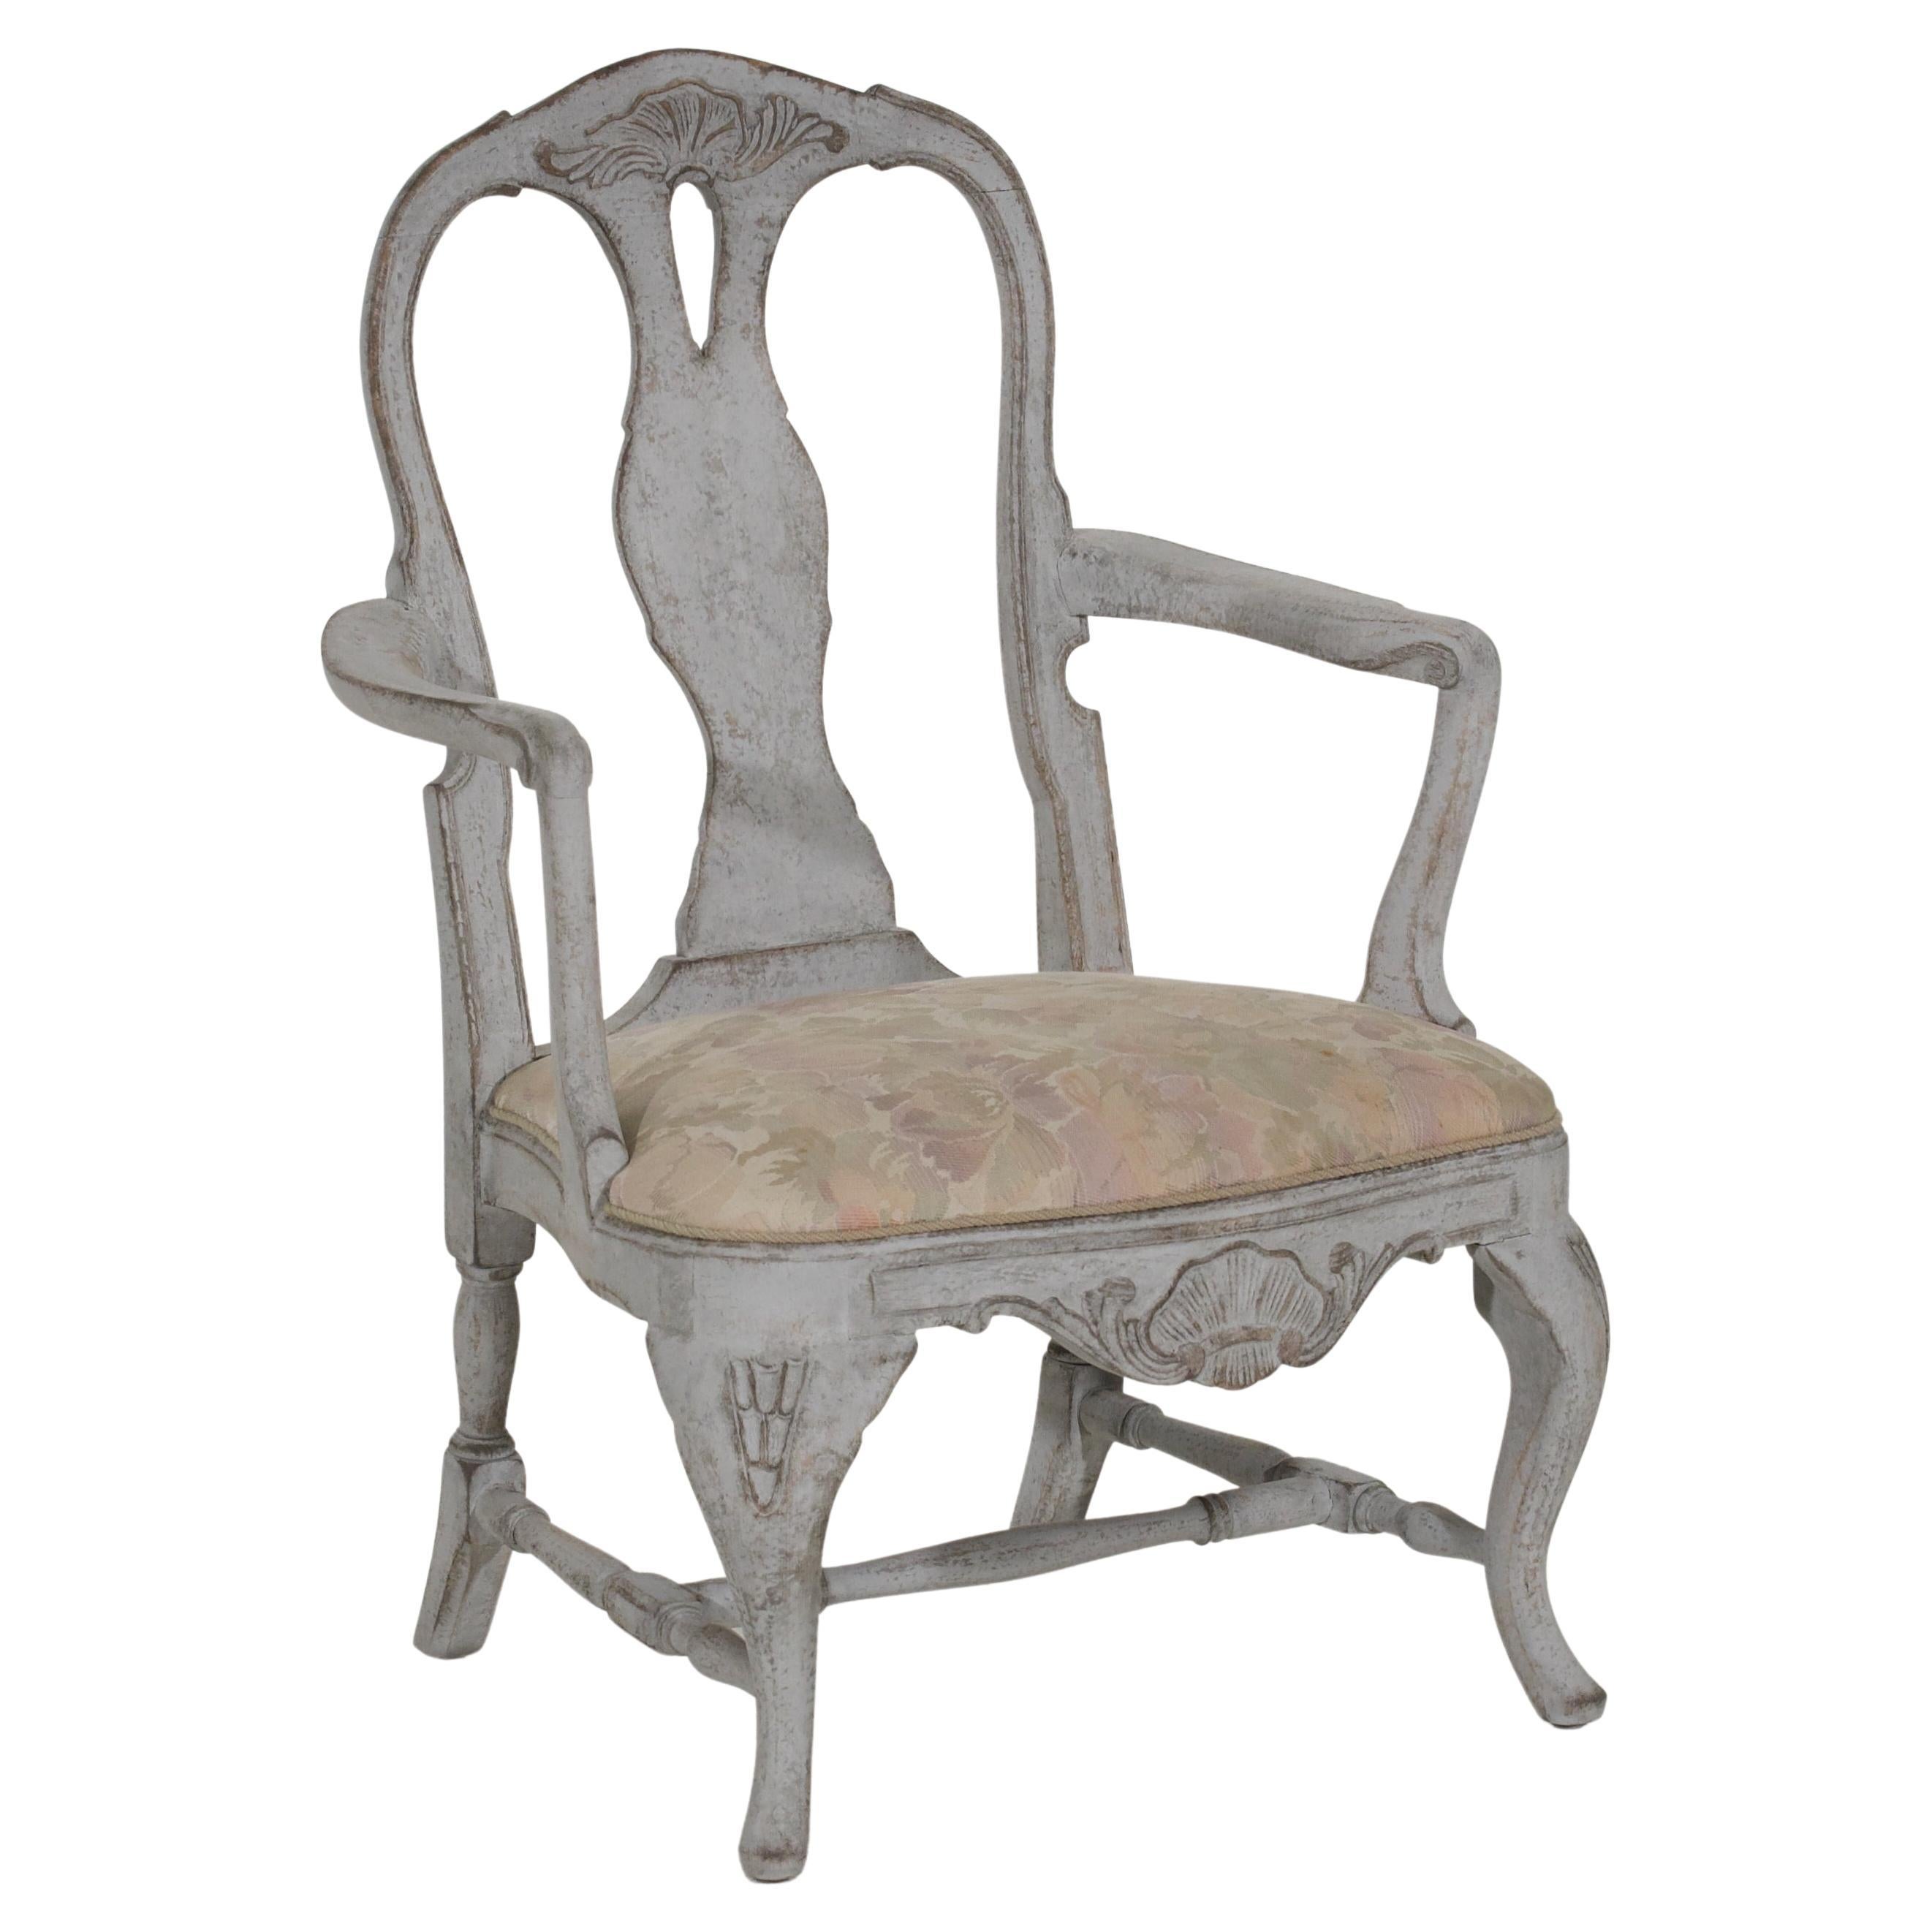 Este sillón sueco del siglo XIX